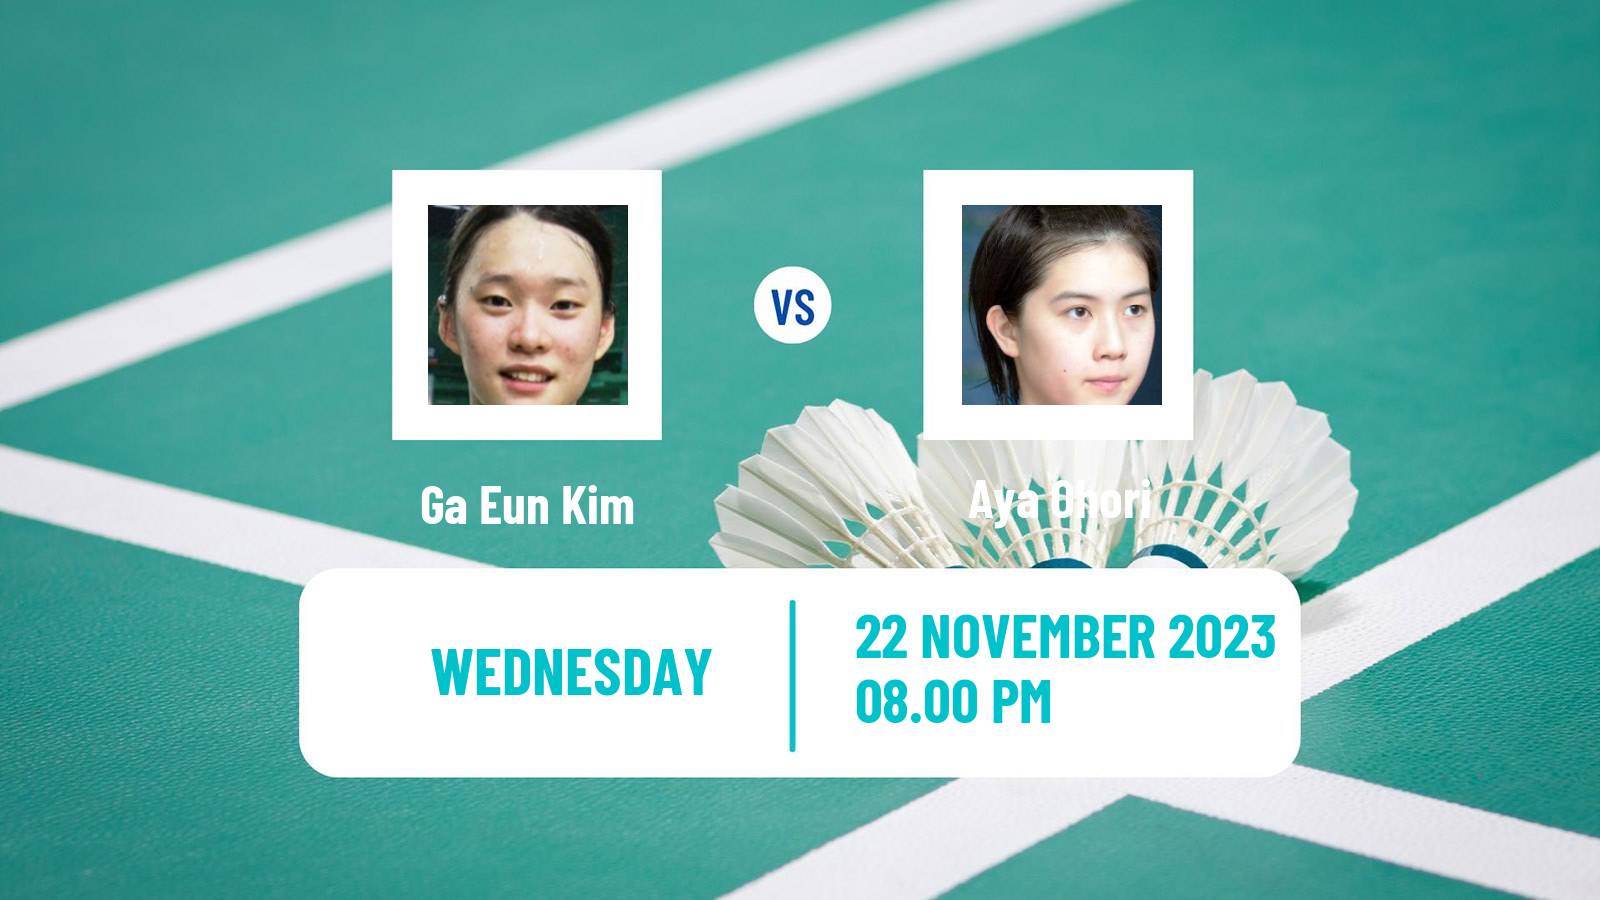 Badminton BWF World Tour China Masters 2 Women Ga Eun Kim - Aya Ohori